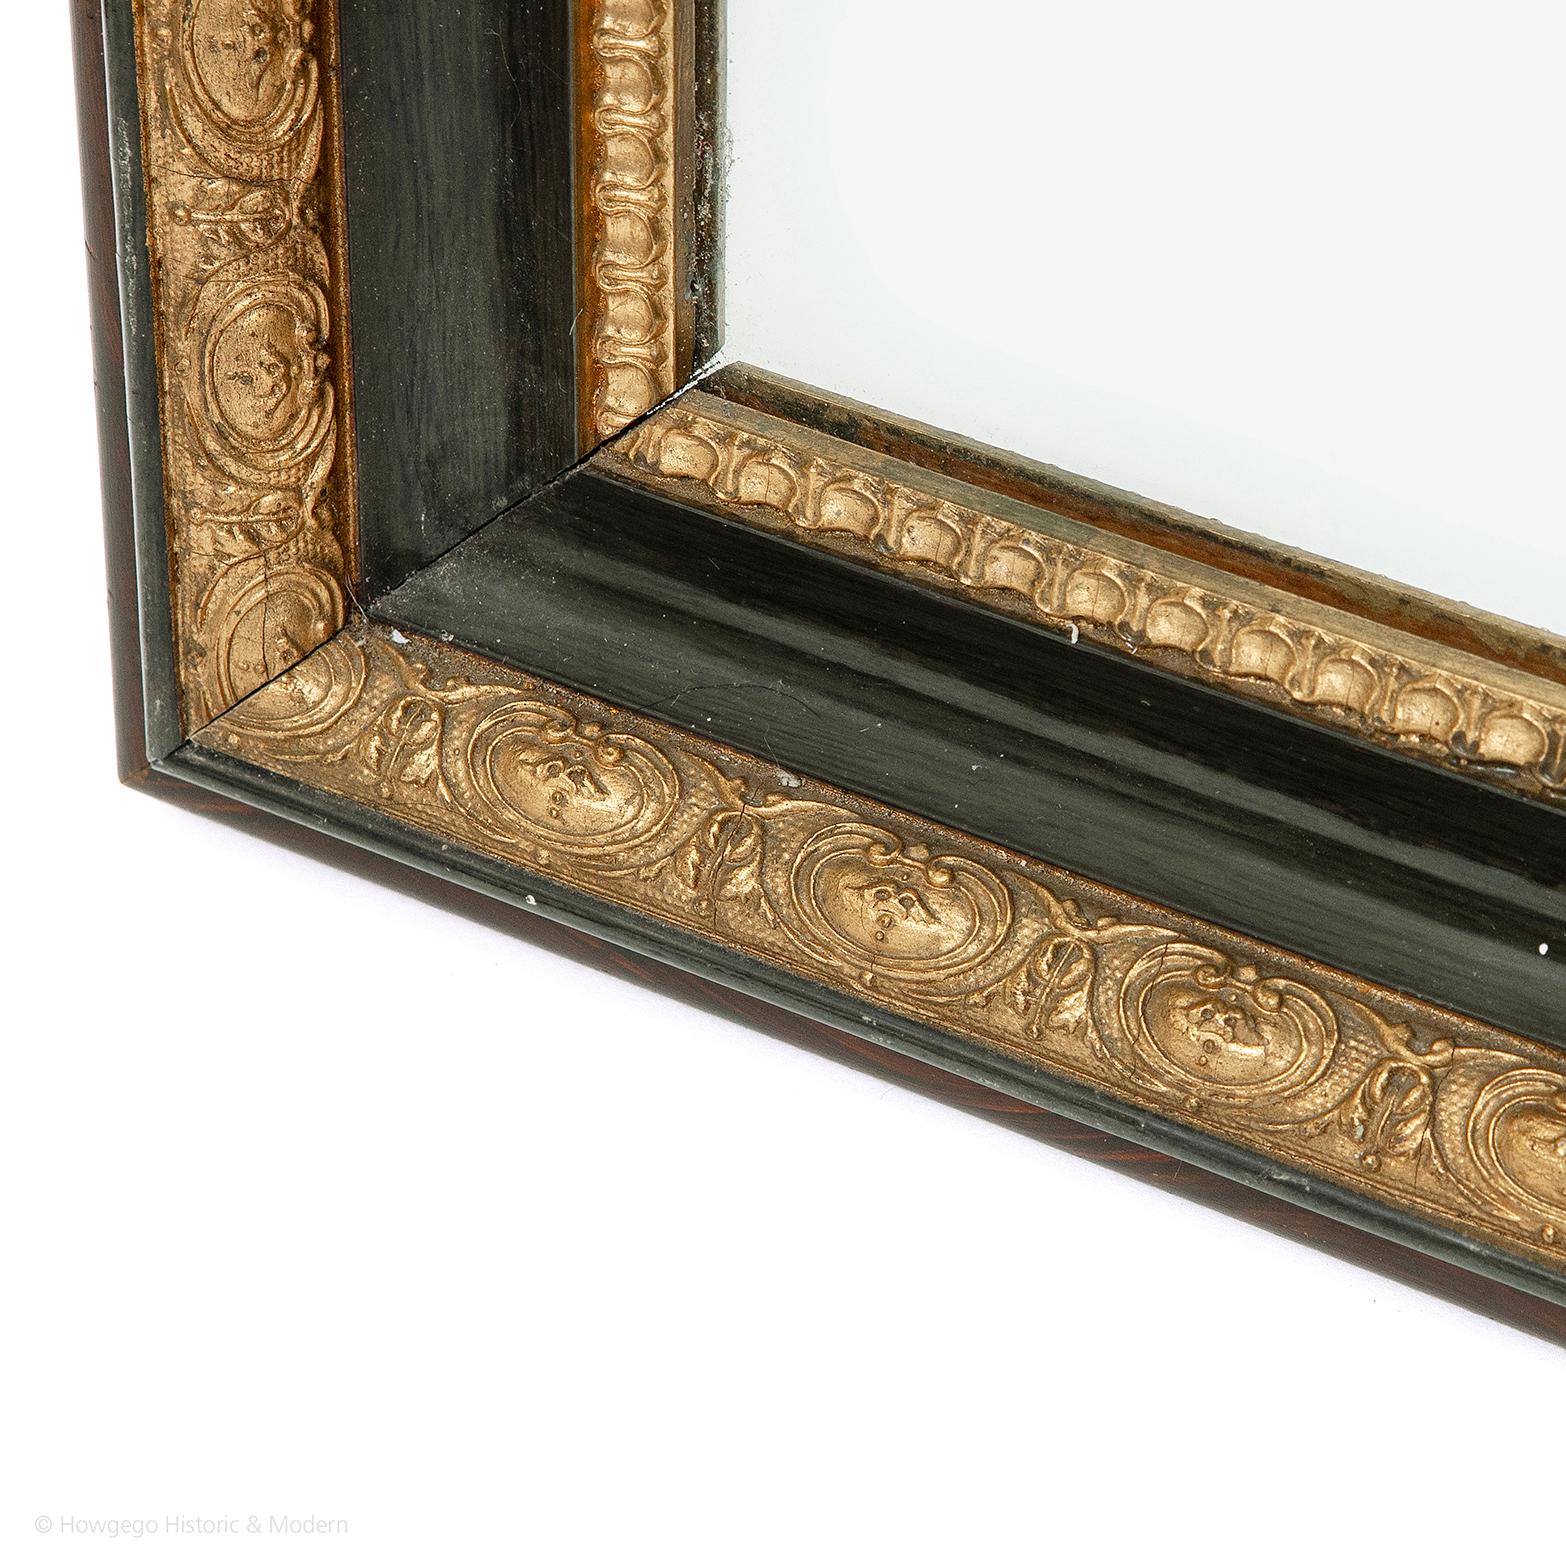 Miroir néoclassique du début du XIXe siècle, laqué vert et grainé, avec sa plaque biseautée d'origine

La plaque biseautée d'origine est entourée d'une bordure moulée et dorée. Le cadre en cavetto présente un décor de laque verte avec de fines